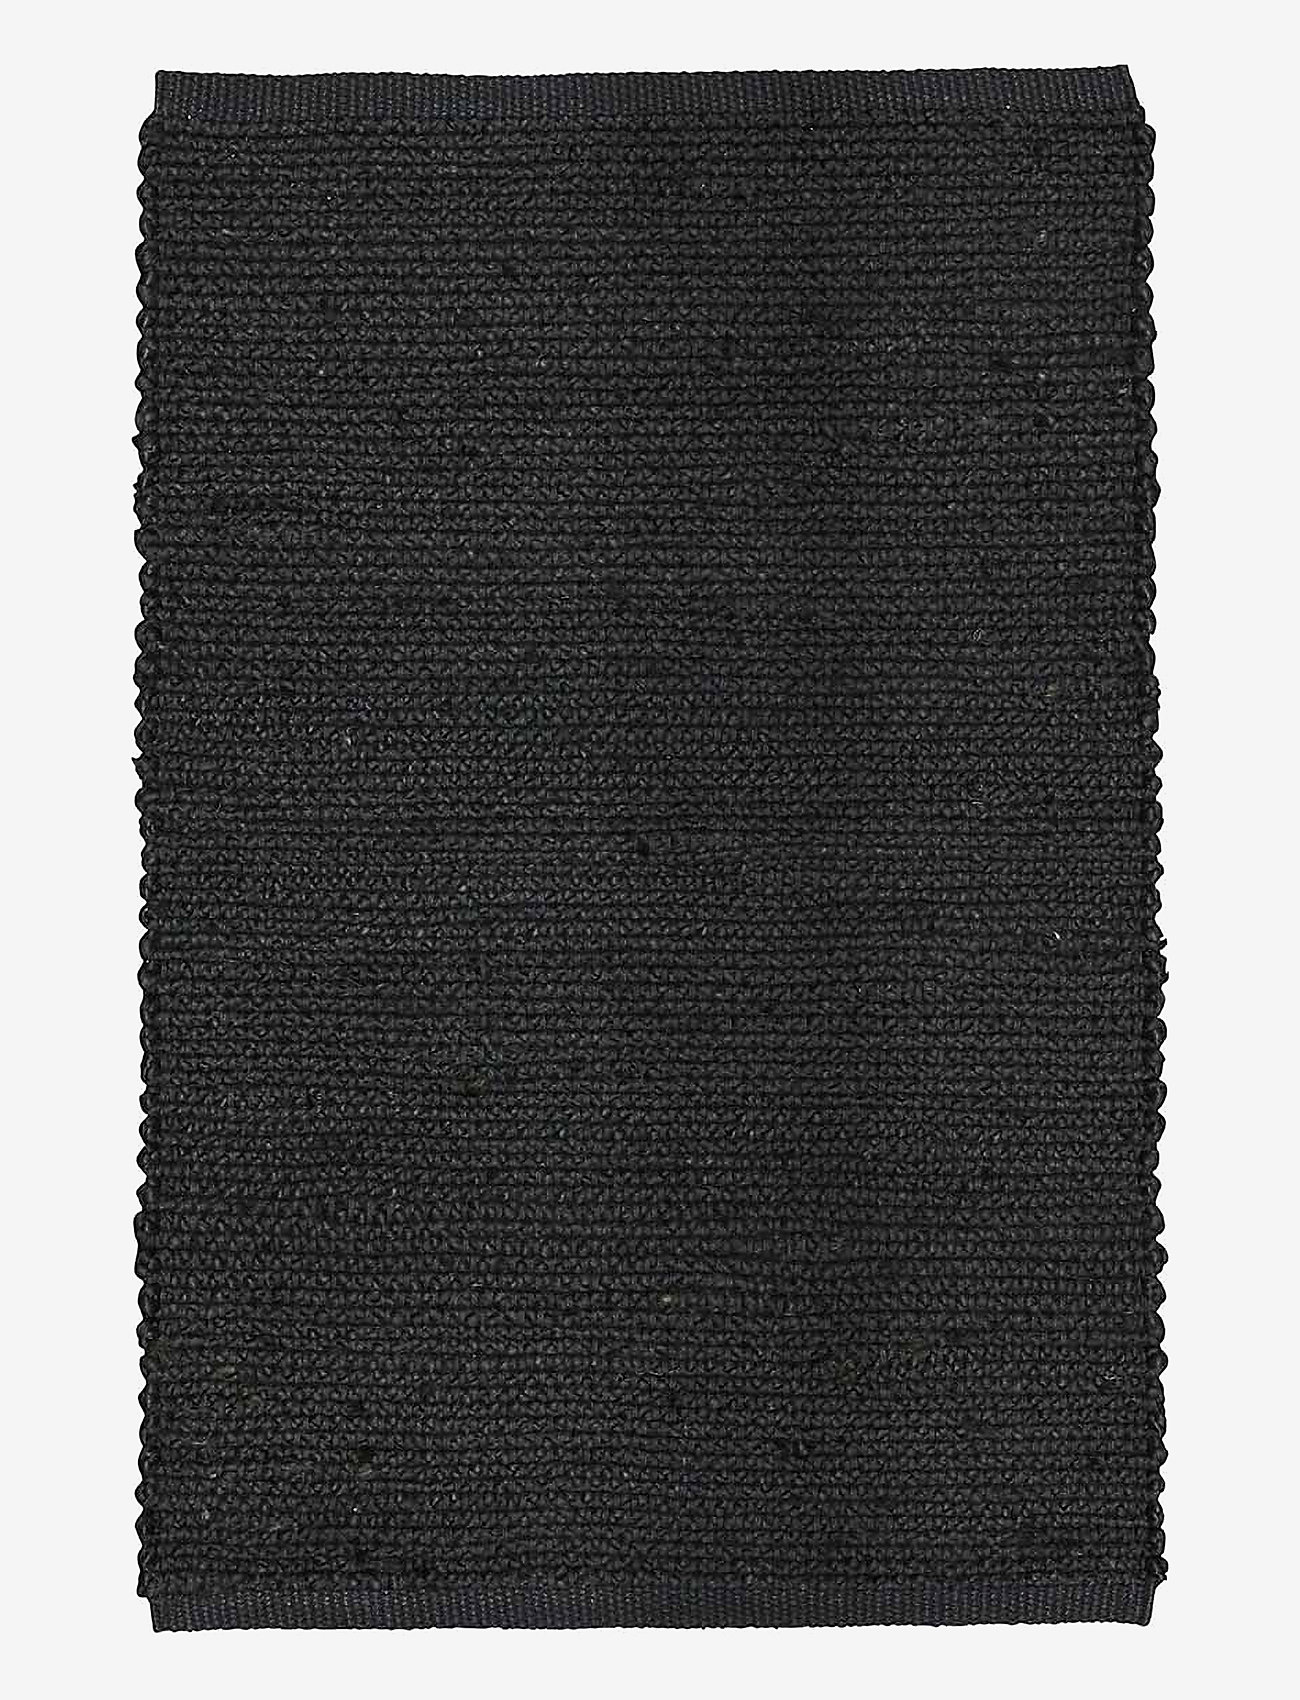 Boel & Jan - Carpet - Merida - madalaimad hinnad - black - 0